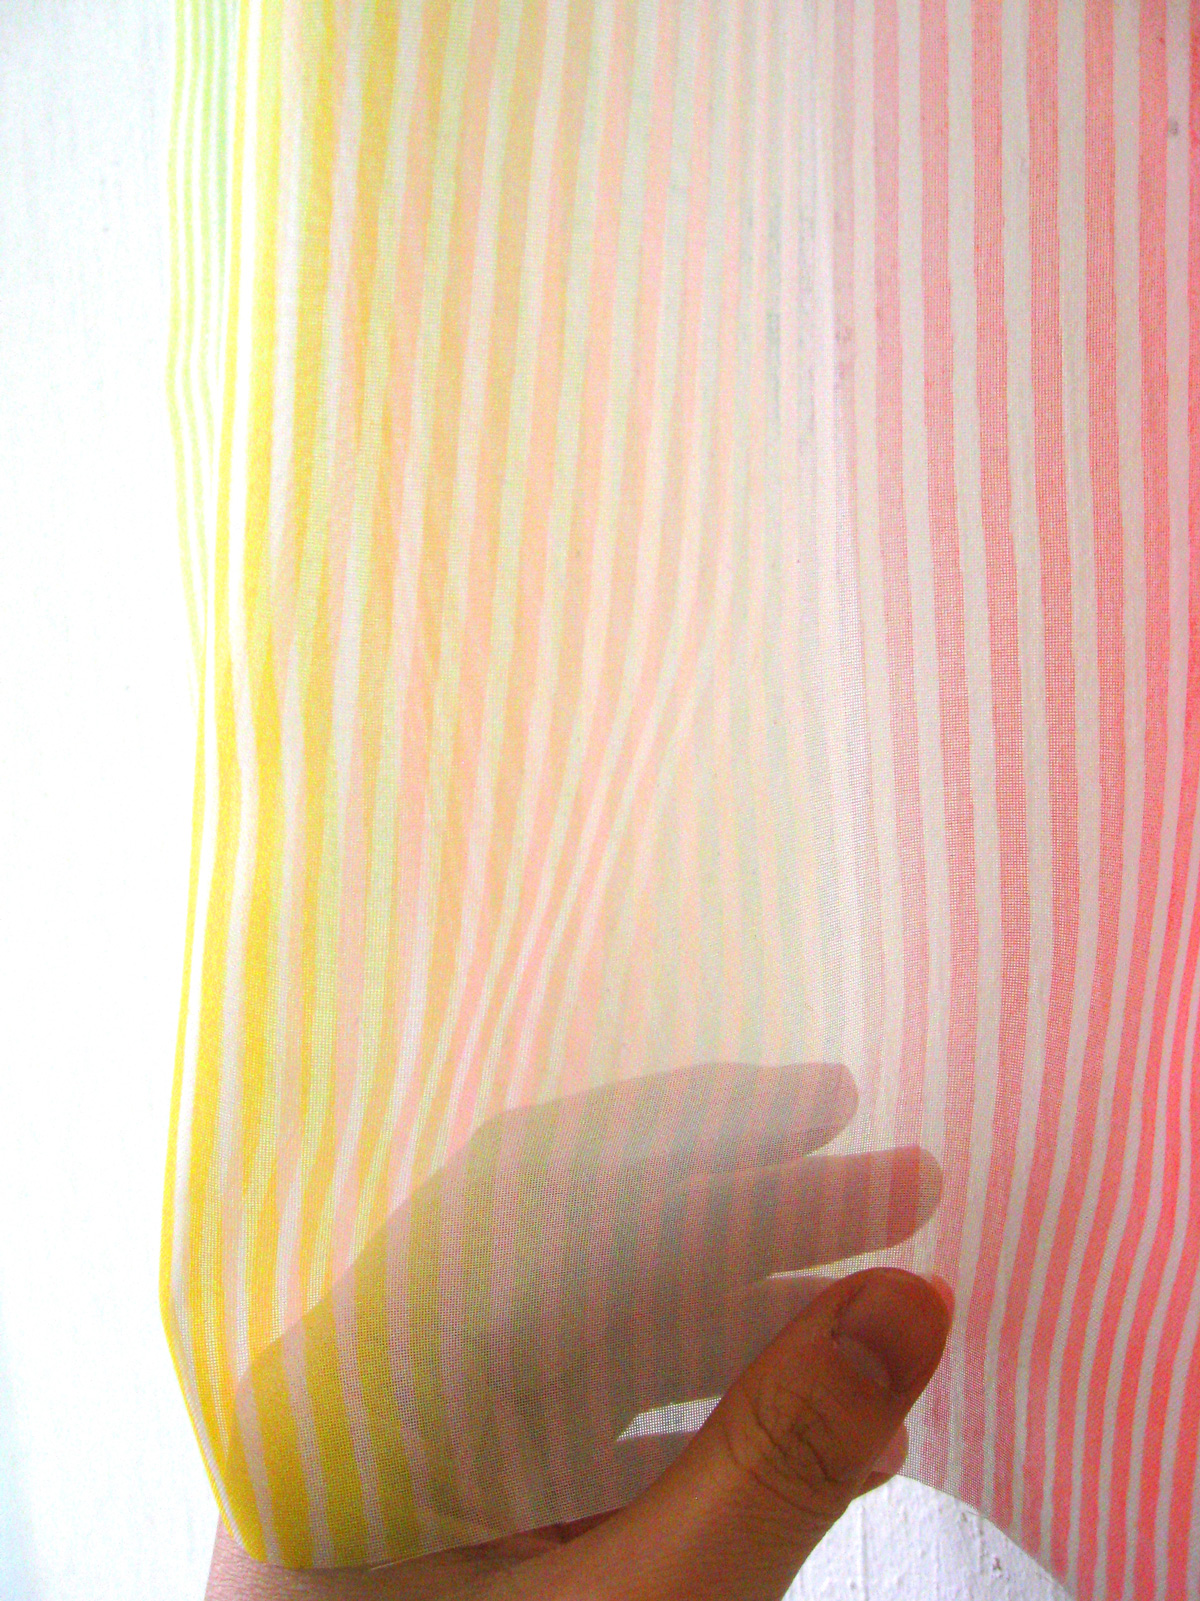 Colour stripes